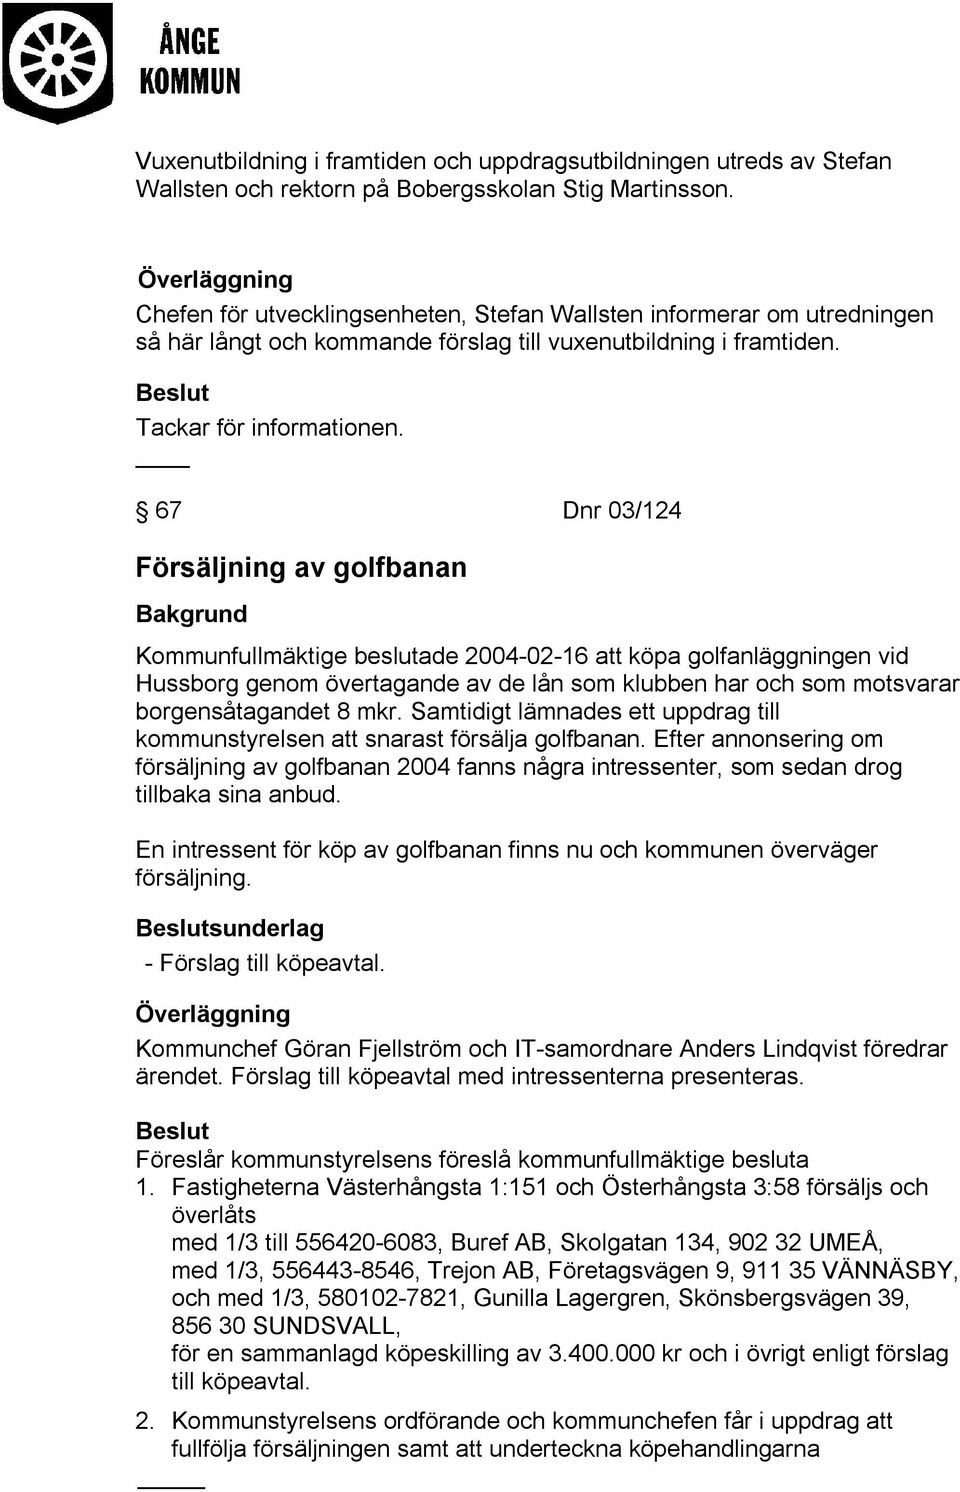 67 Dnr 03/124 Försäljning av golfbanan Kommunfullmäktige beslutade 2004-02-16 att köpa golfanläggningen vid Hussborg genom övertagande av de lån som klubben har och som motsvarar borgensåtagandet 8